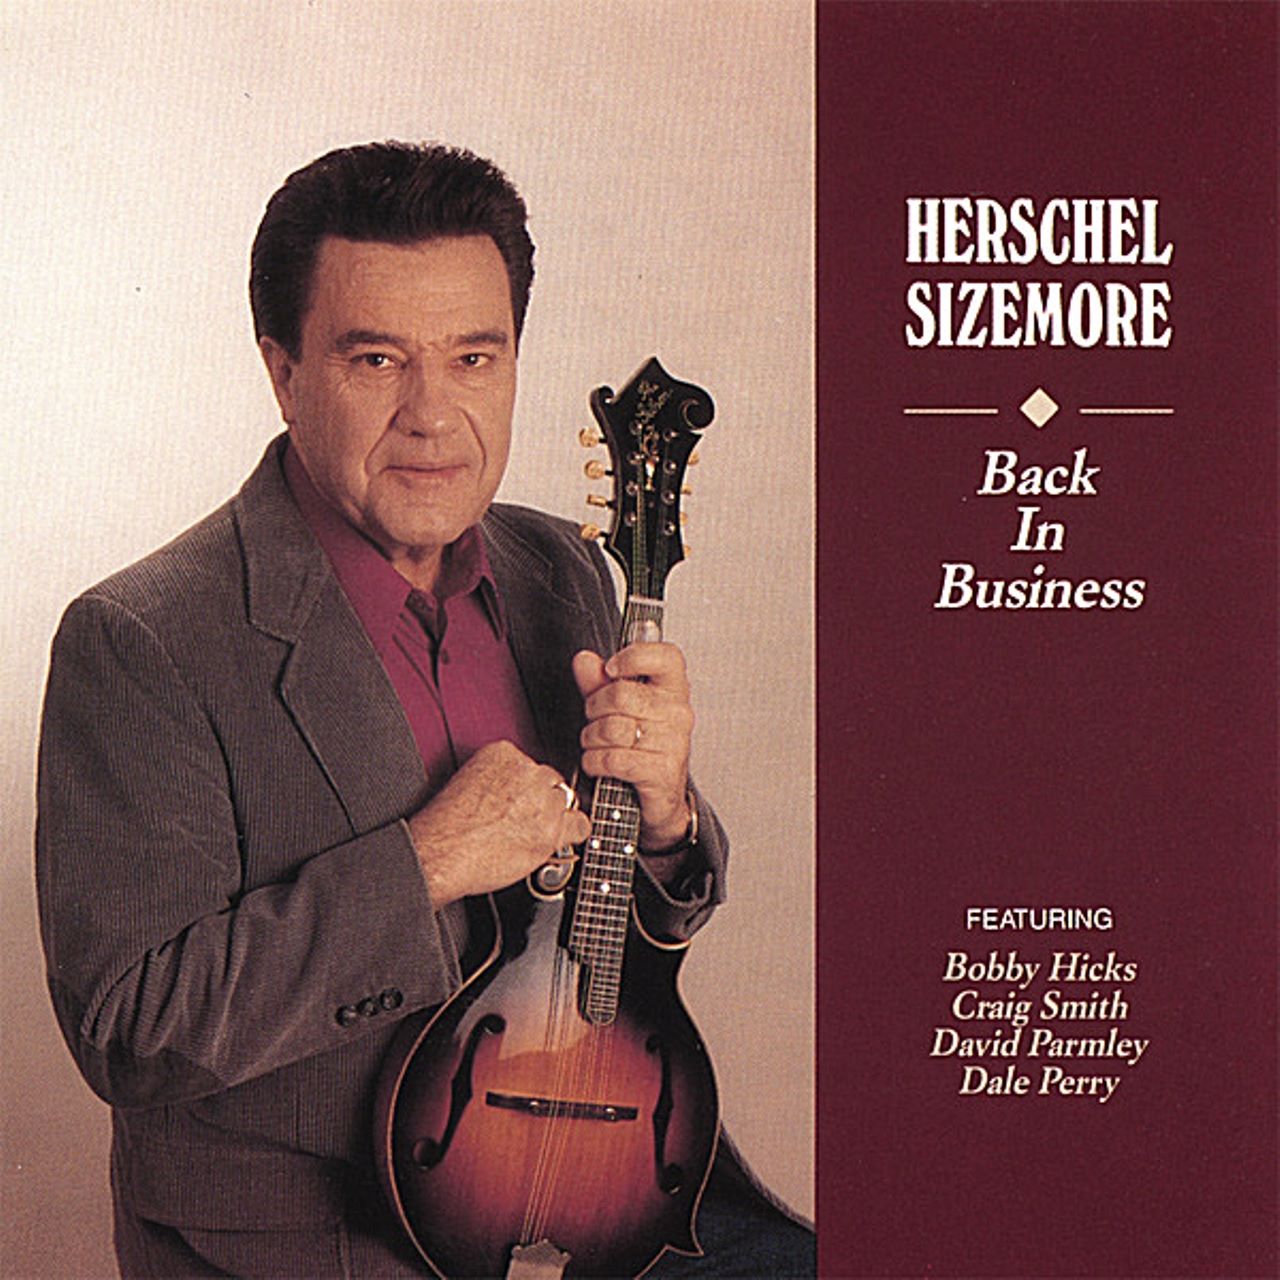 Herschel Sizemore - Back In Business cover album